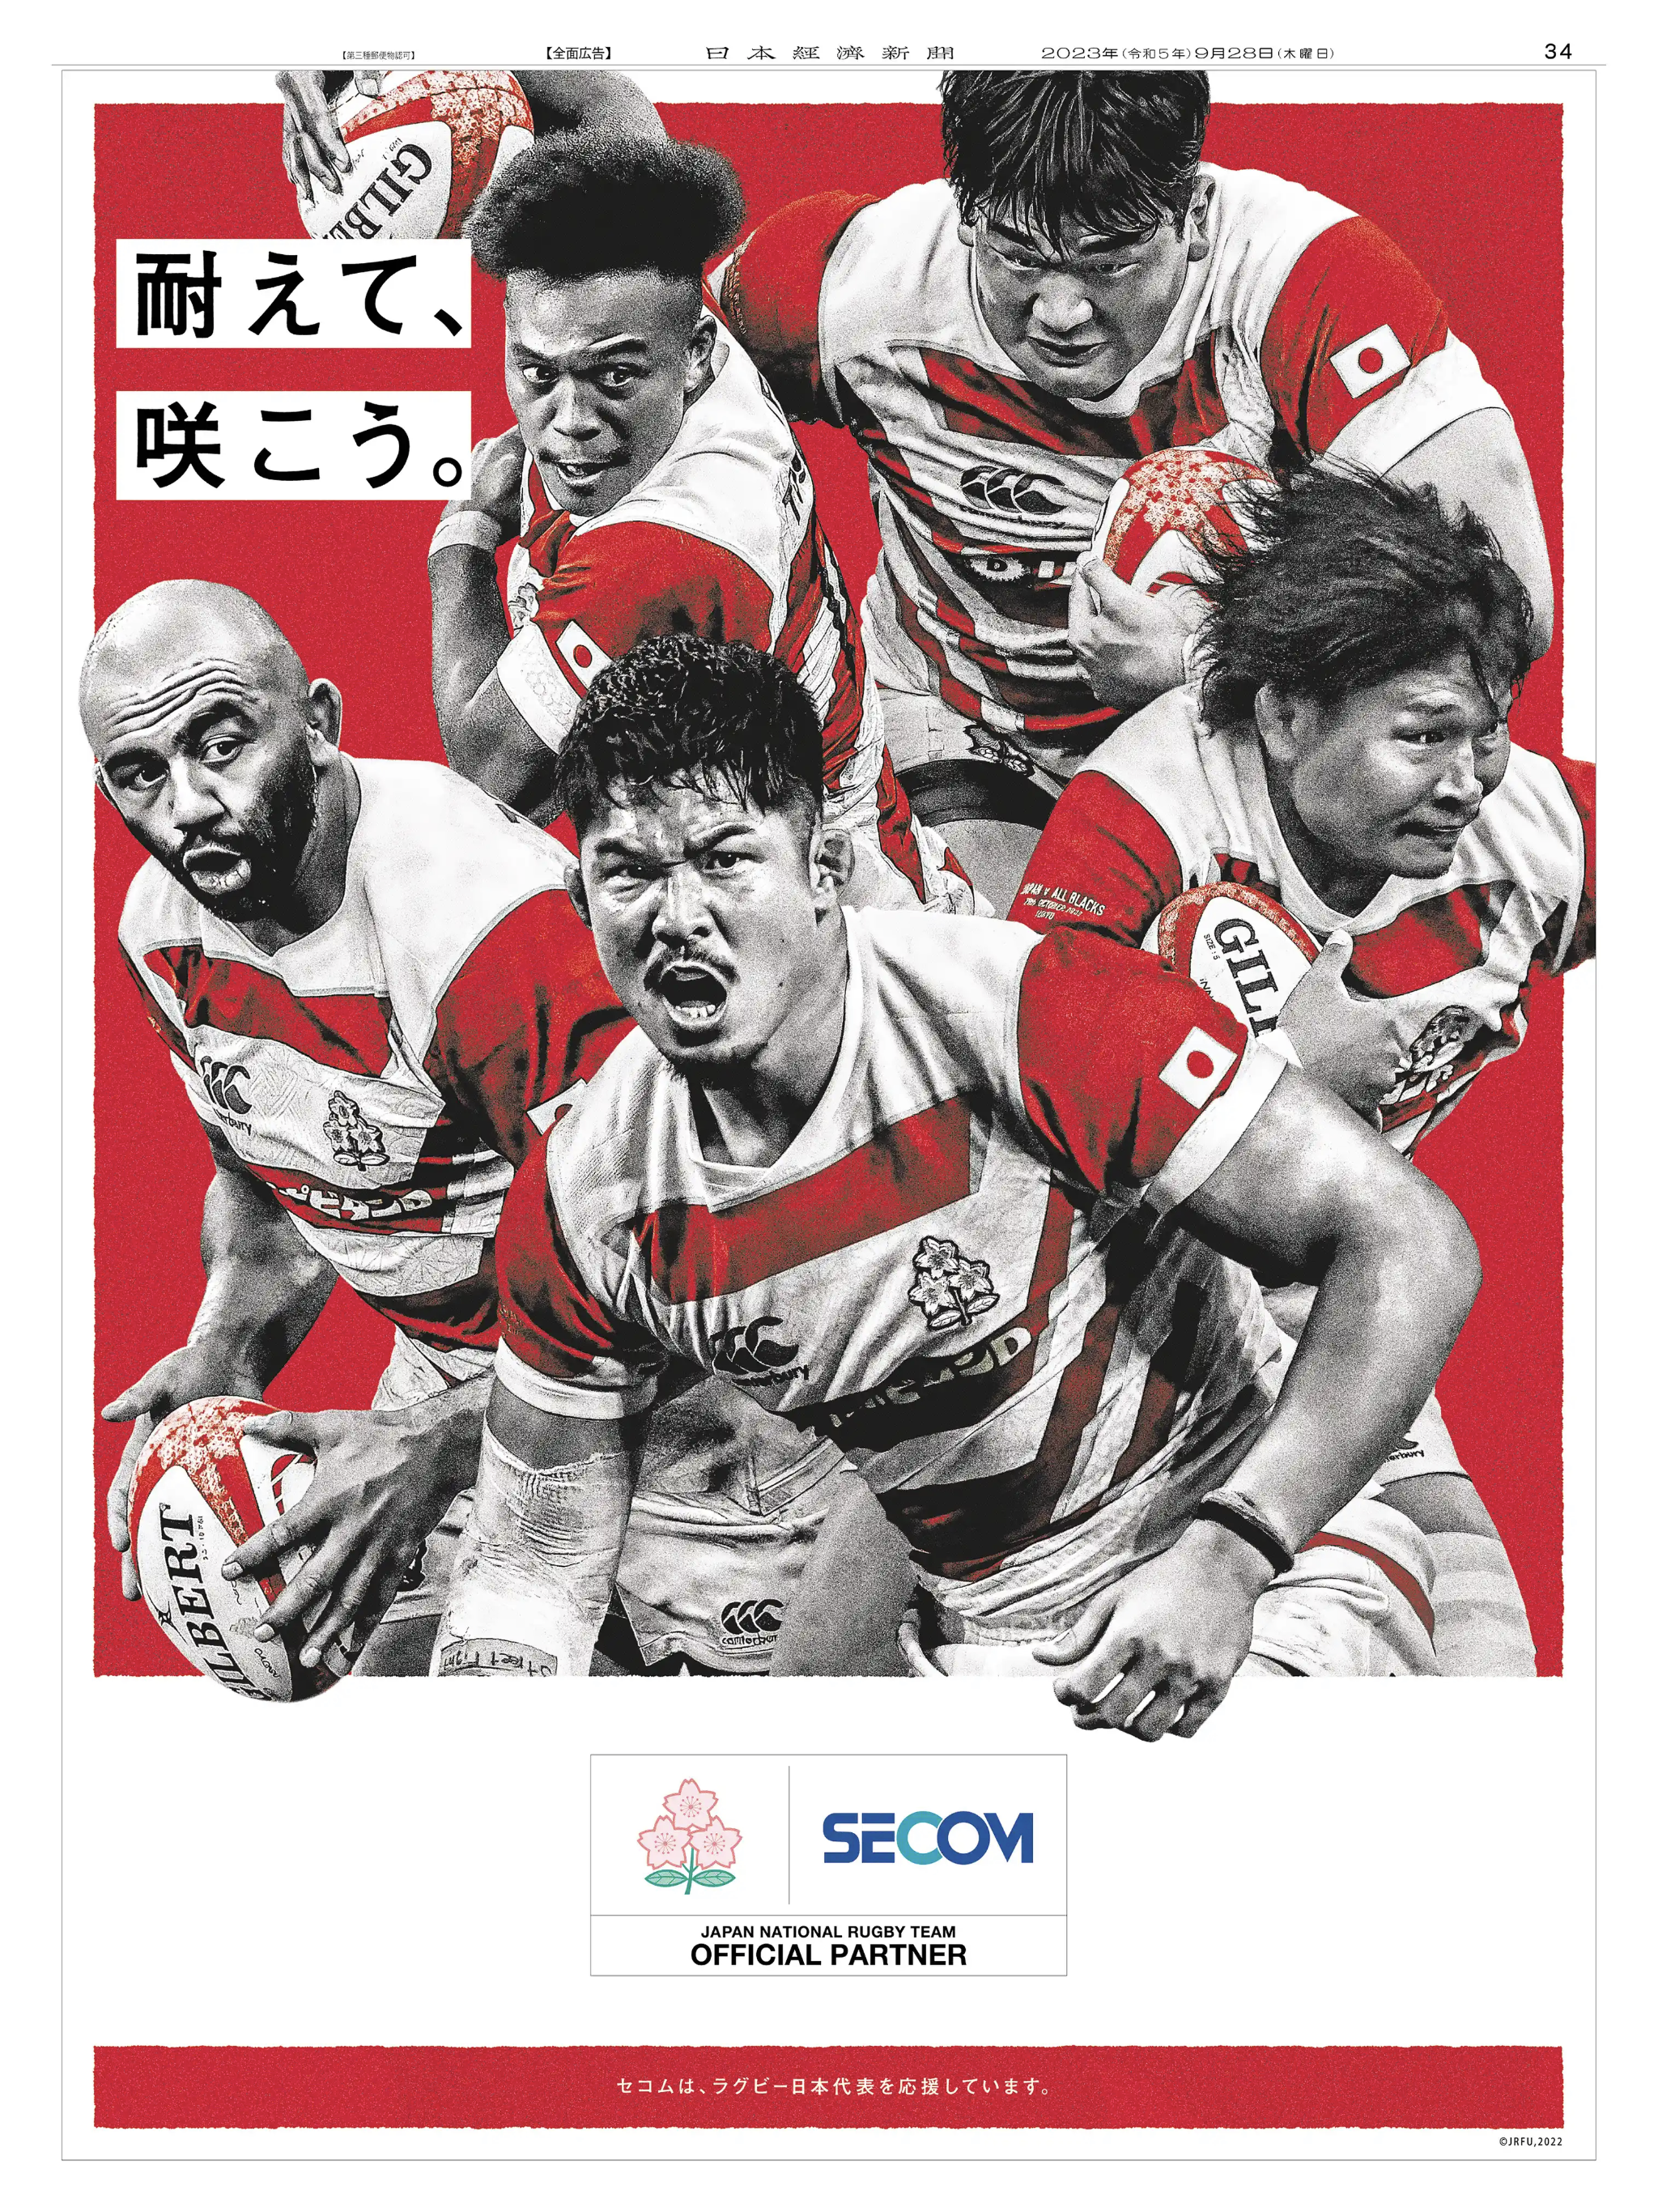 自社の企業風土と日本代表の姿を重ね躍動感のあるスポーツ支援広告を展開